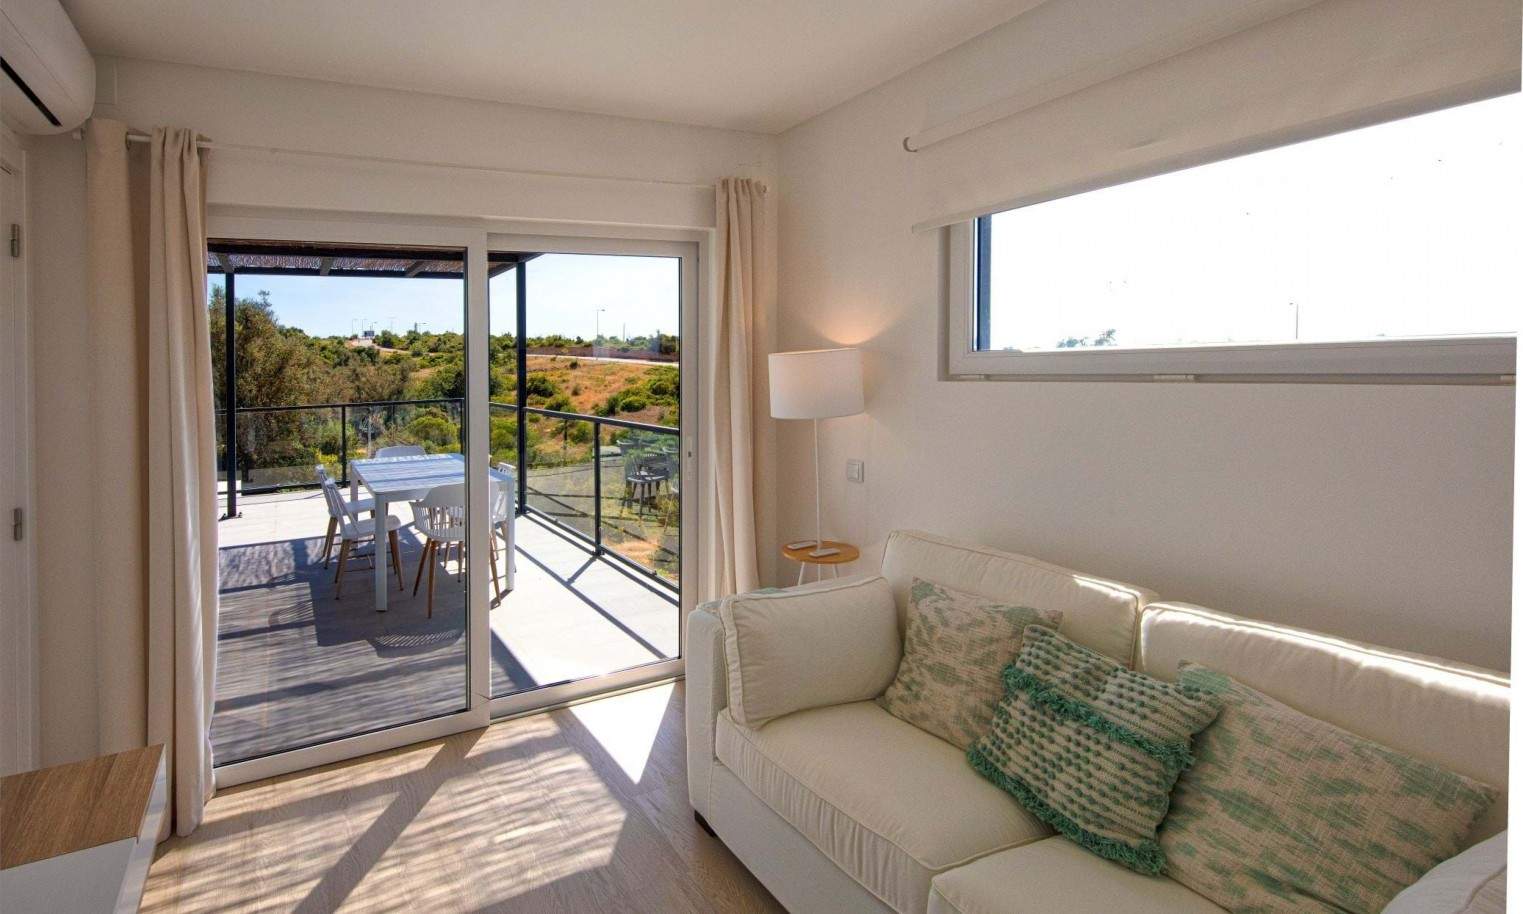 Moradia T2+1 em resort, para venda em Carvoeiro, Algarve_204869